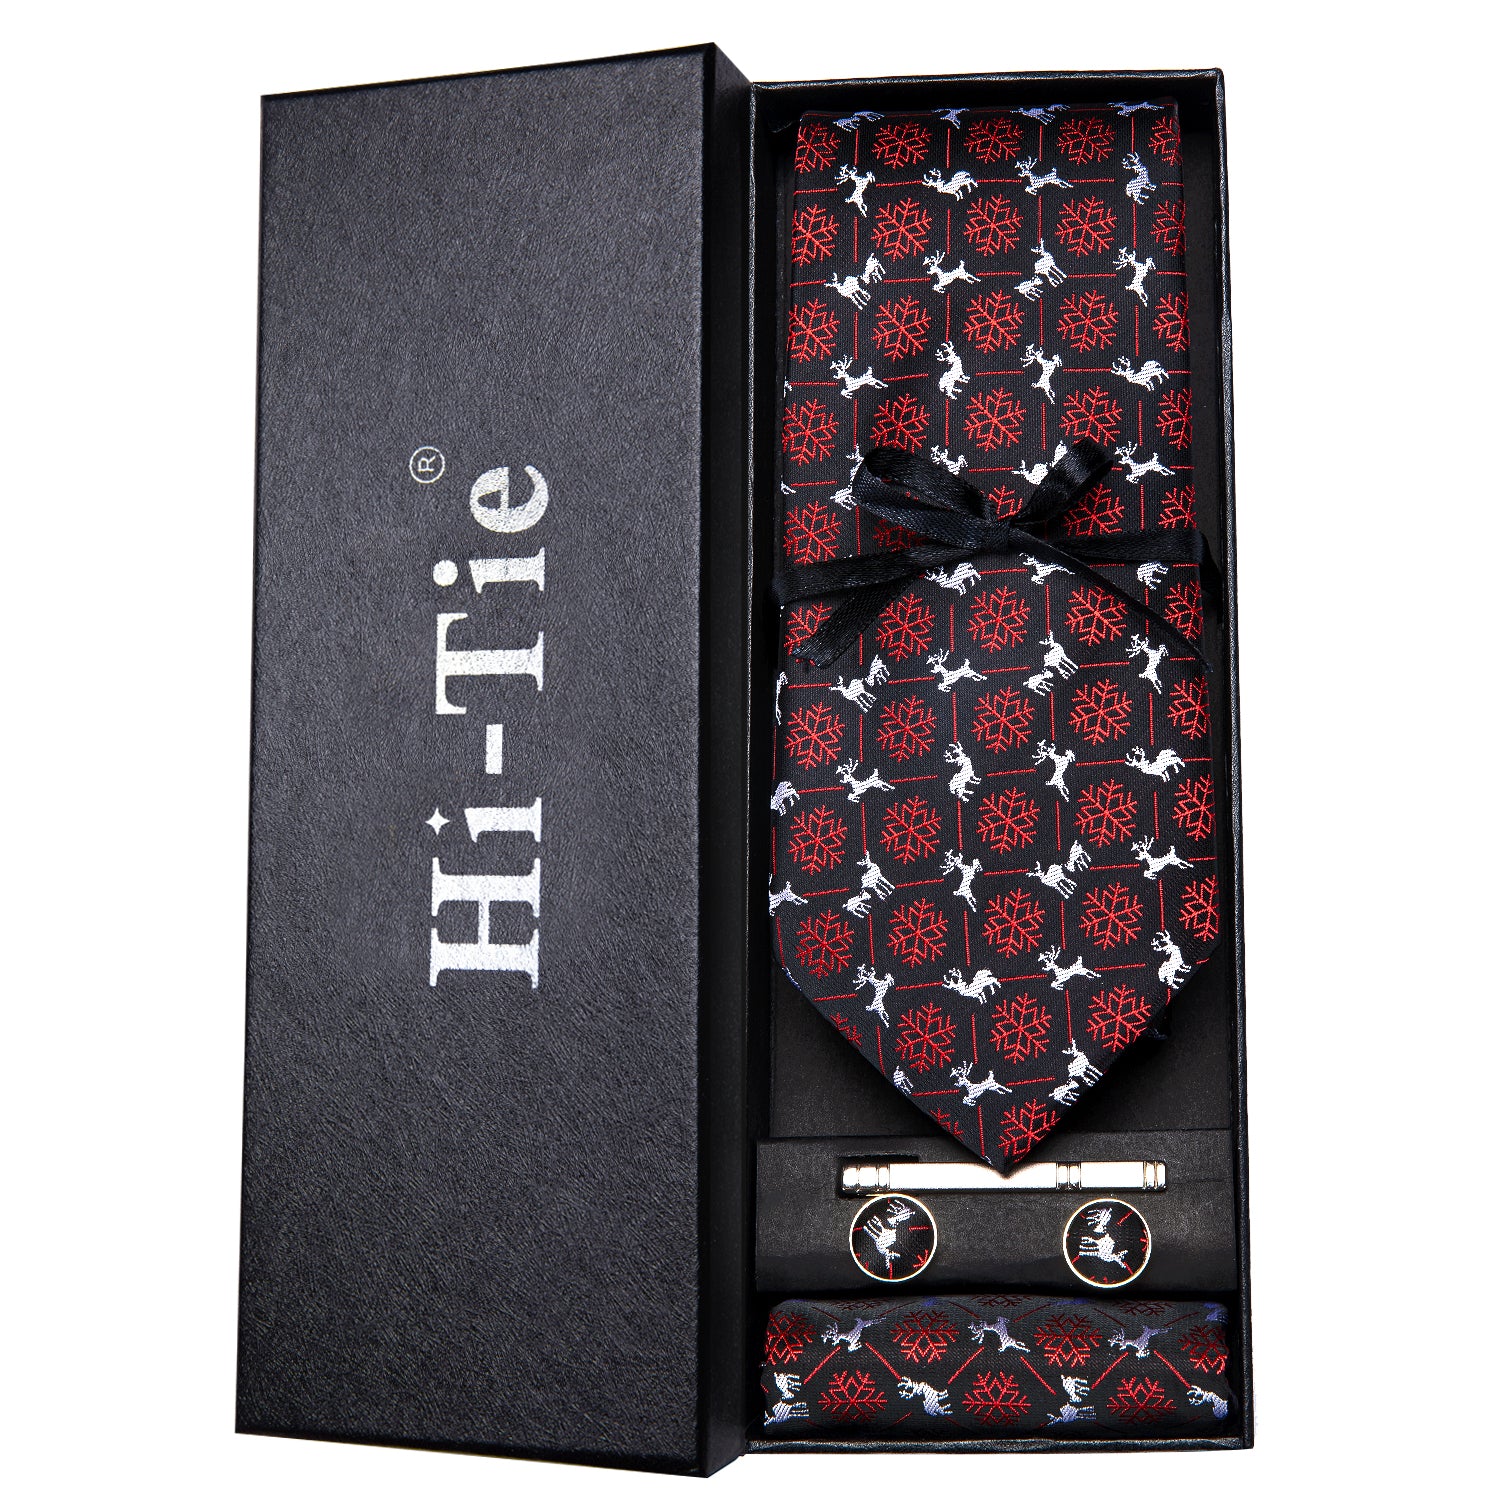 Black Snow Flake Silk Necktie Pocket Square Cufflinks Gift Box Set